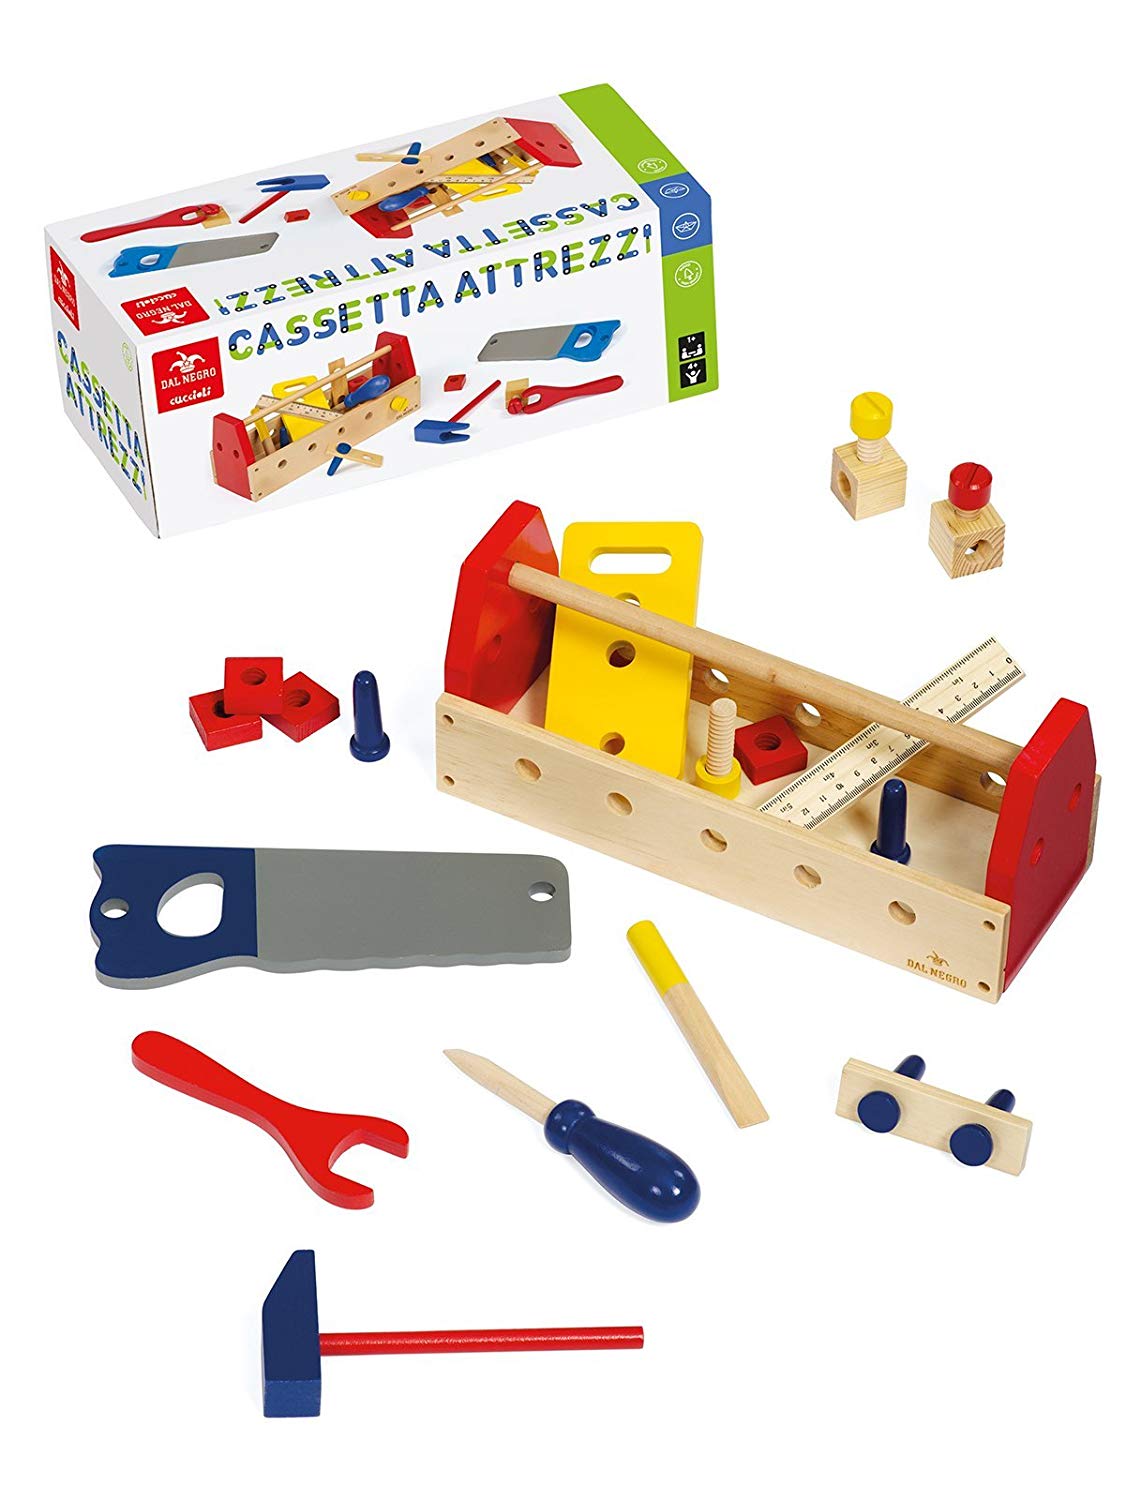 Cassetta degli attrezzi - Giochi in legno - Carpentiere - Bambini